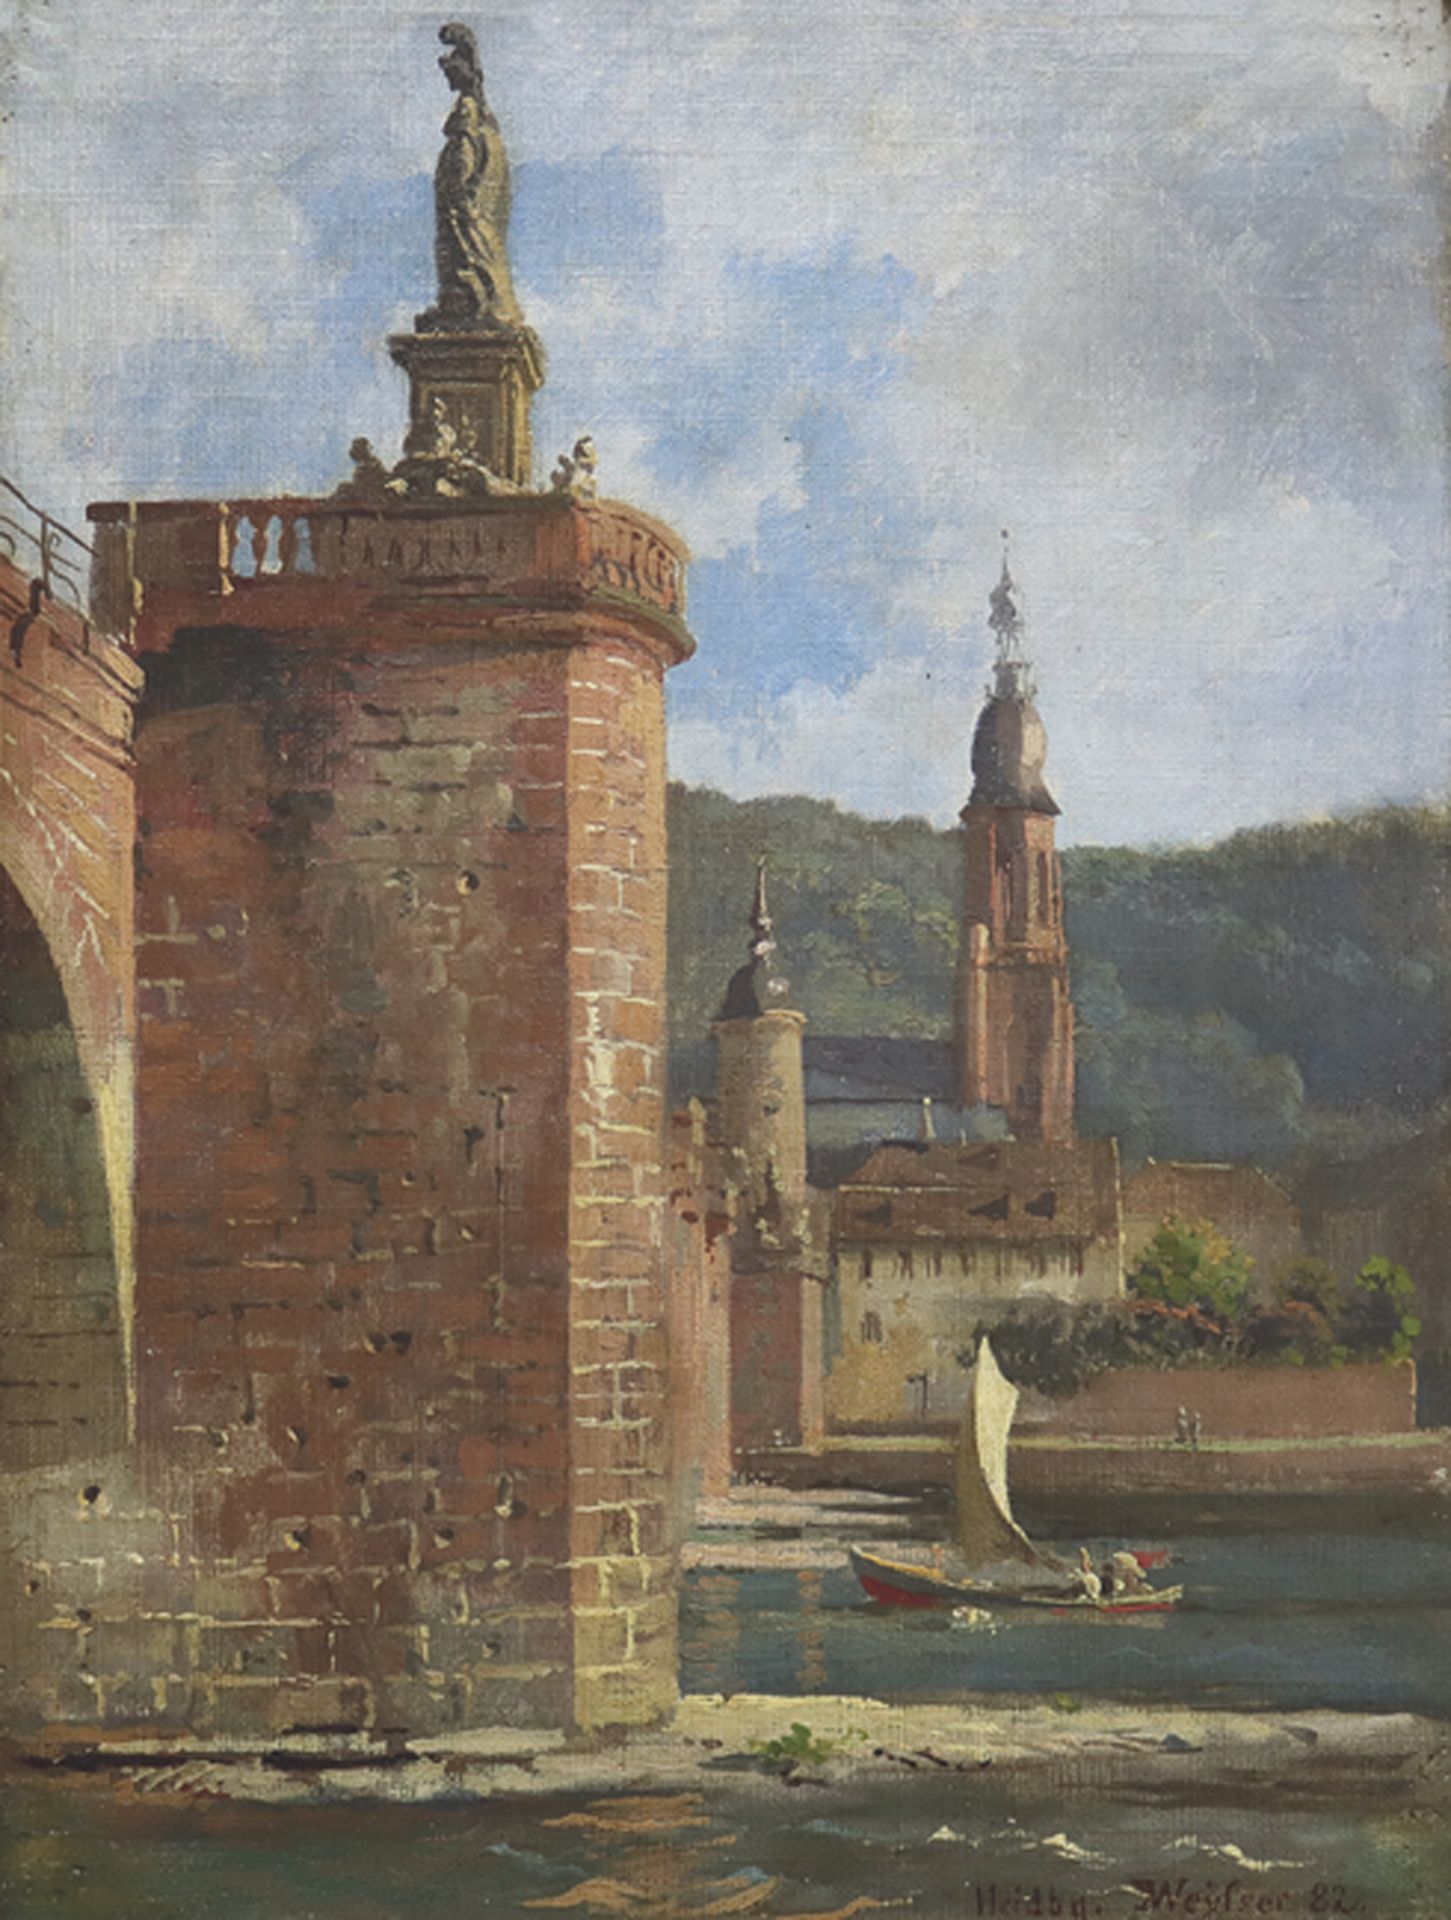 KARL WEYSSER: Heidelberg: Blick auf die Minervastatue der Alten Brücke und die Heiliggeistkirche.